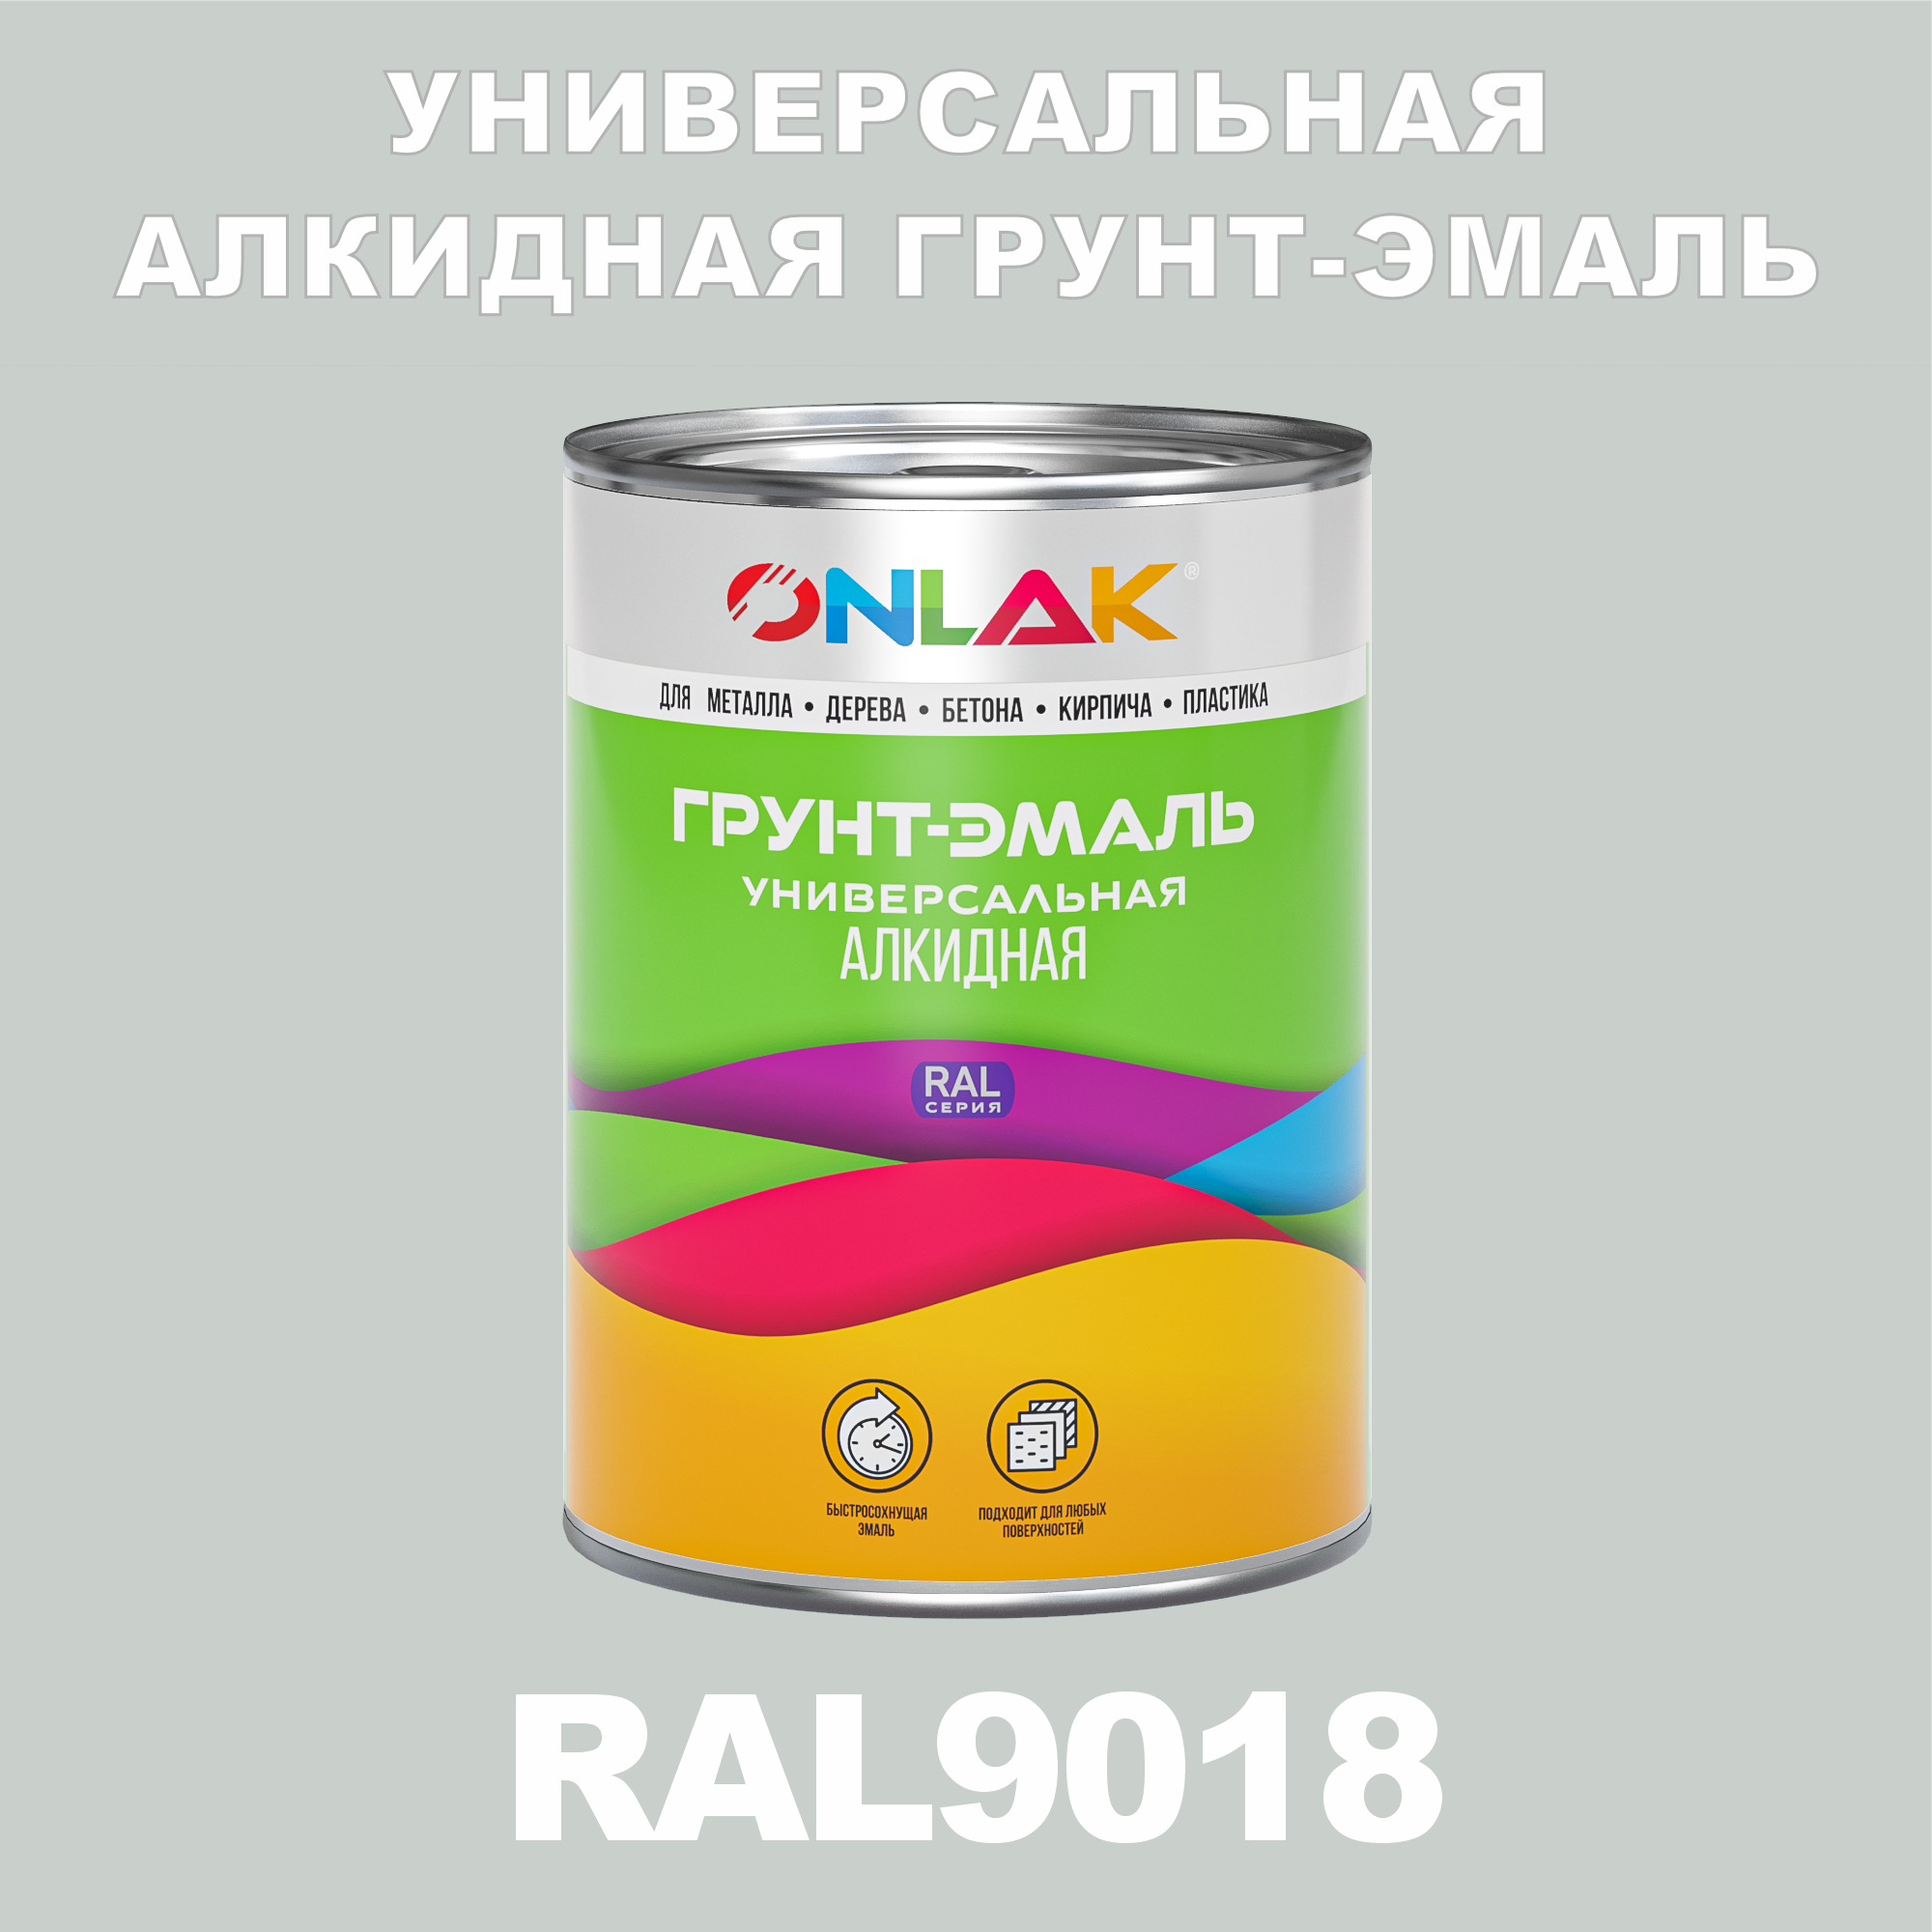 Грунт-эмаль ONLAK 1К RAL9018 антикоррозионная алкидная, по металлу, по ржавчине, 1 кг, грунт эмаль yollo по ржавчине алкидная зеленая 0 9 кг